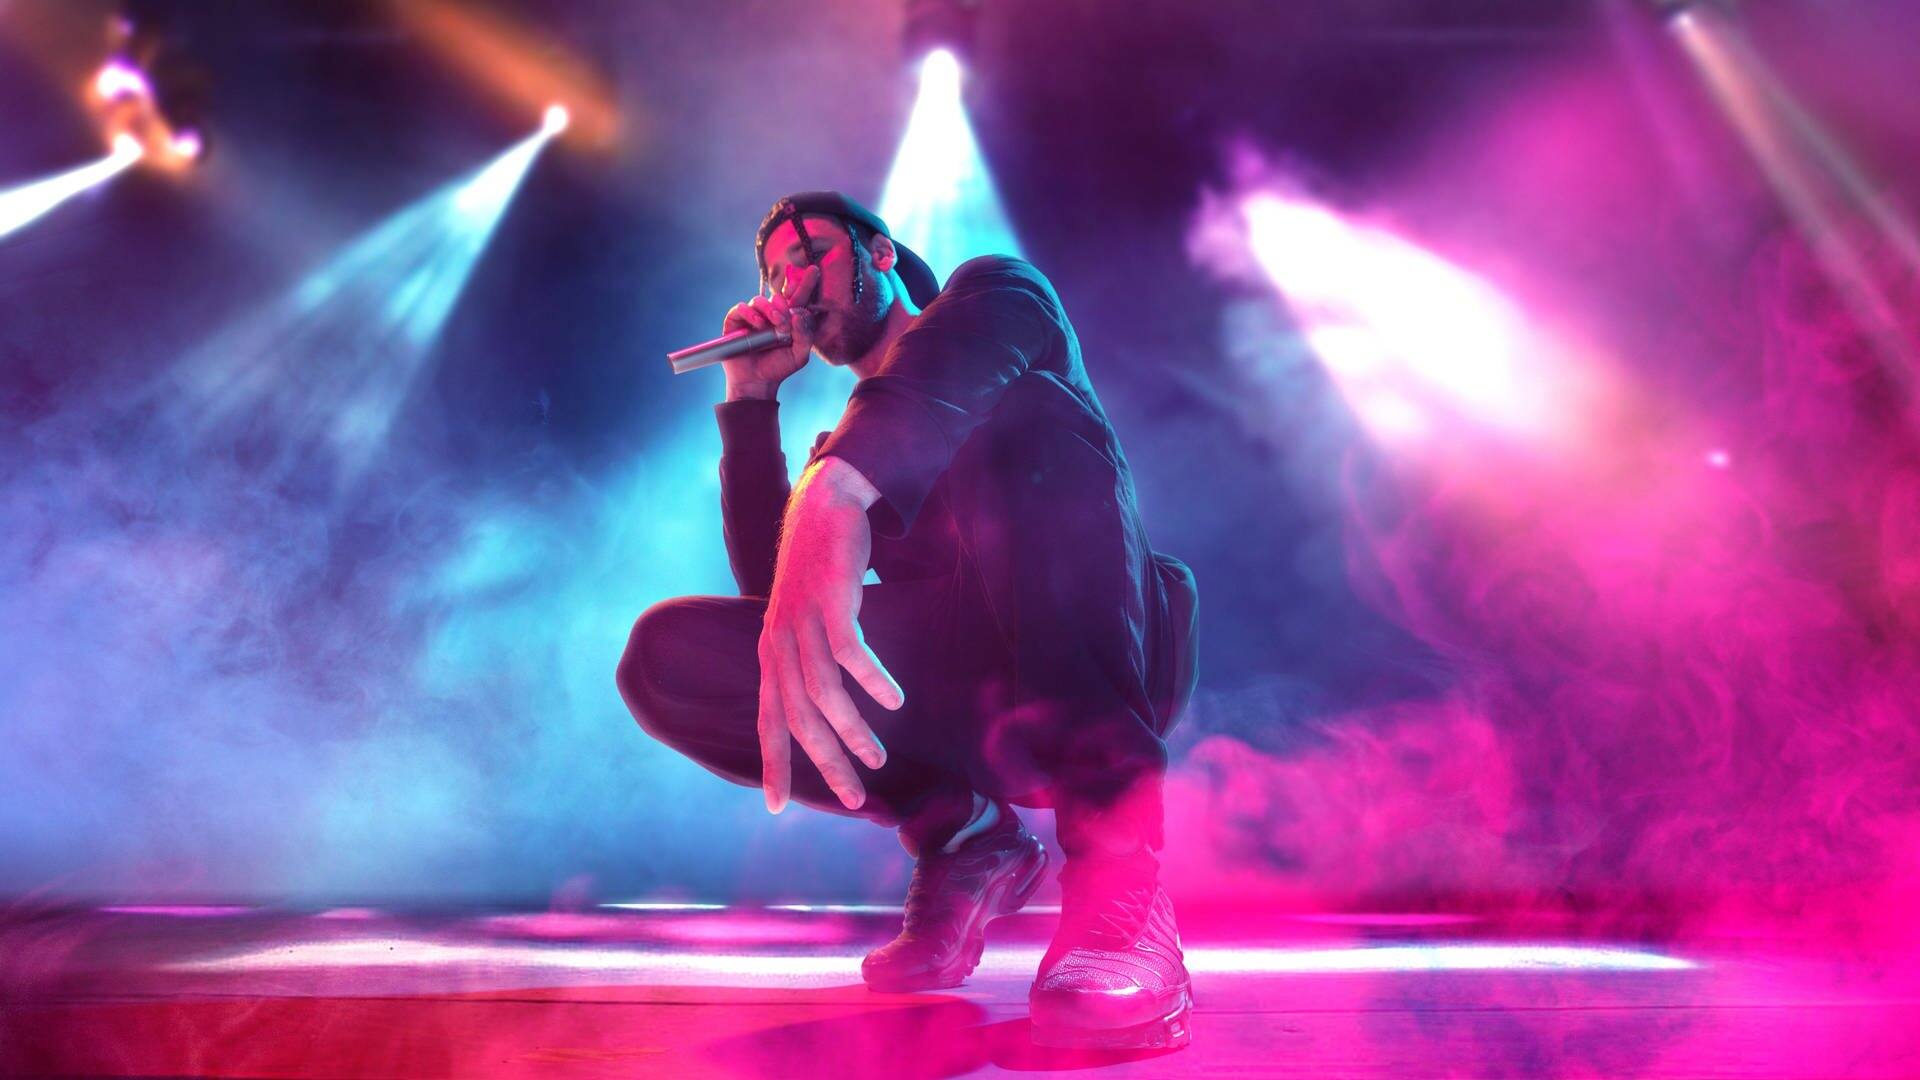 Ein Rapper ist in der Hocke und hält ein Mikrofon in der Hand (Foto: Adobe Stock, master1305)